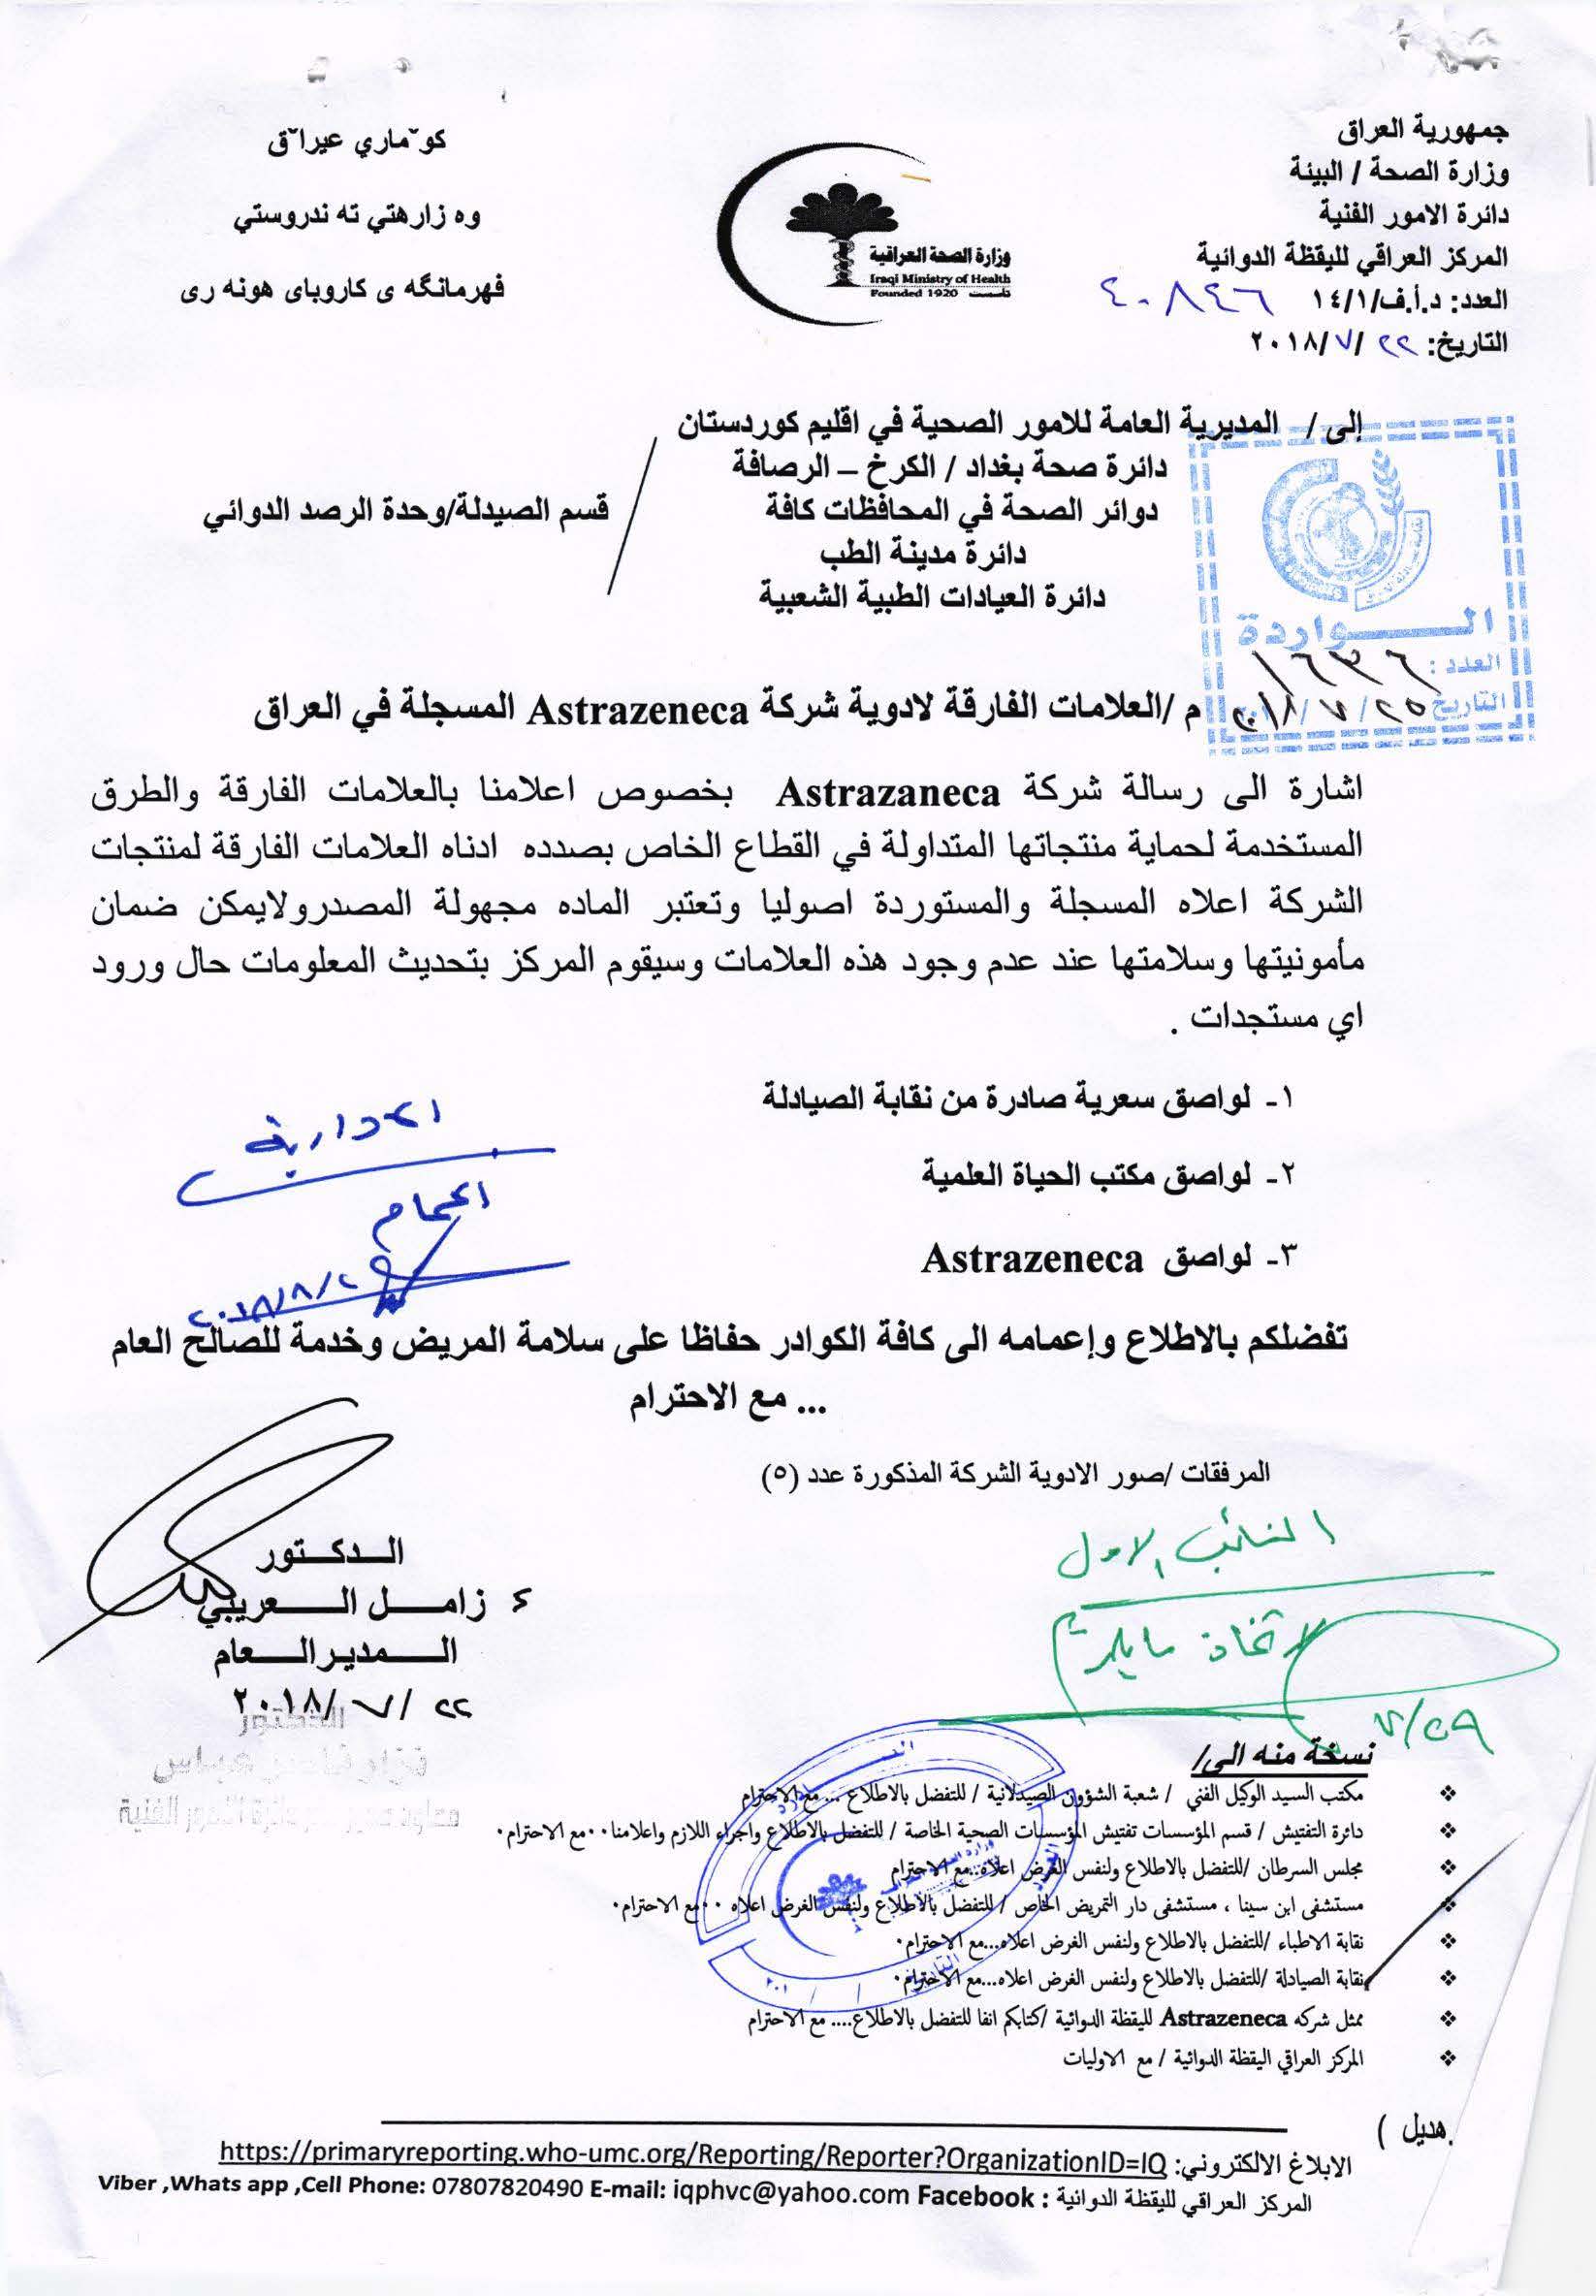 تعميم وزارة الصحة بخصوص العلامات الفارقة لادوية شركة Astrazeneca المسجلة في العراق نقابة صيادلة العراق